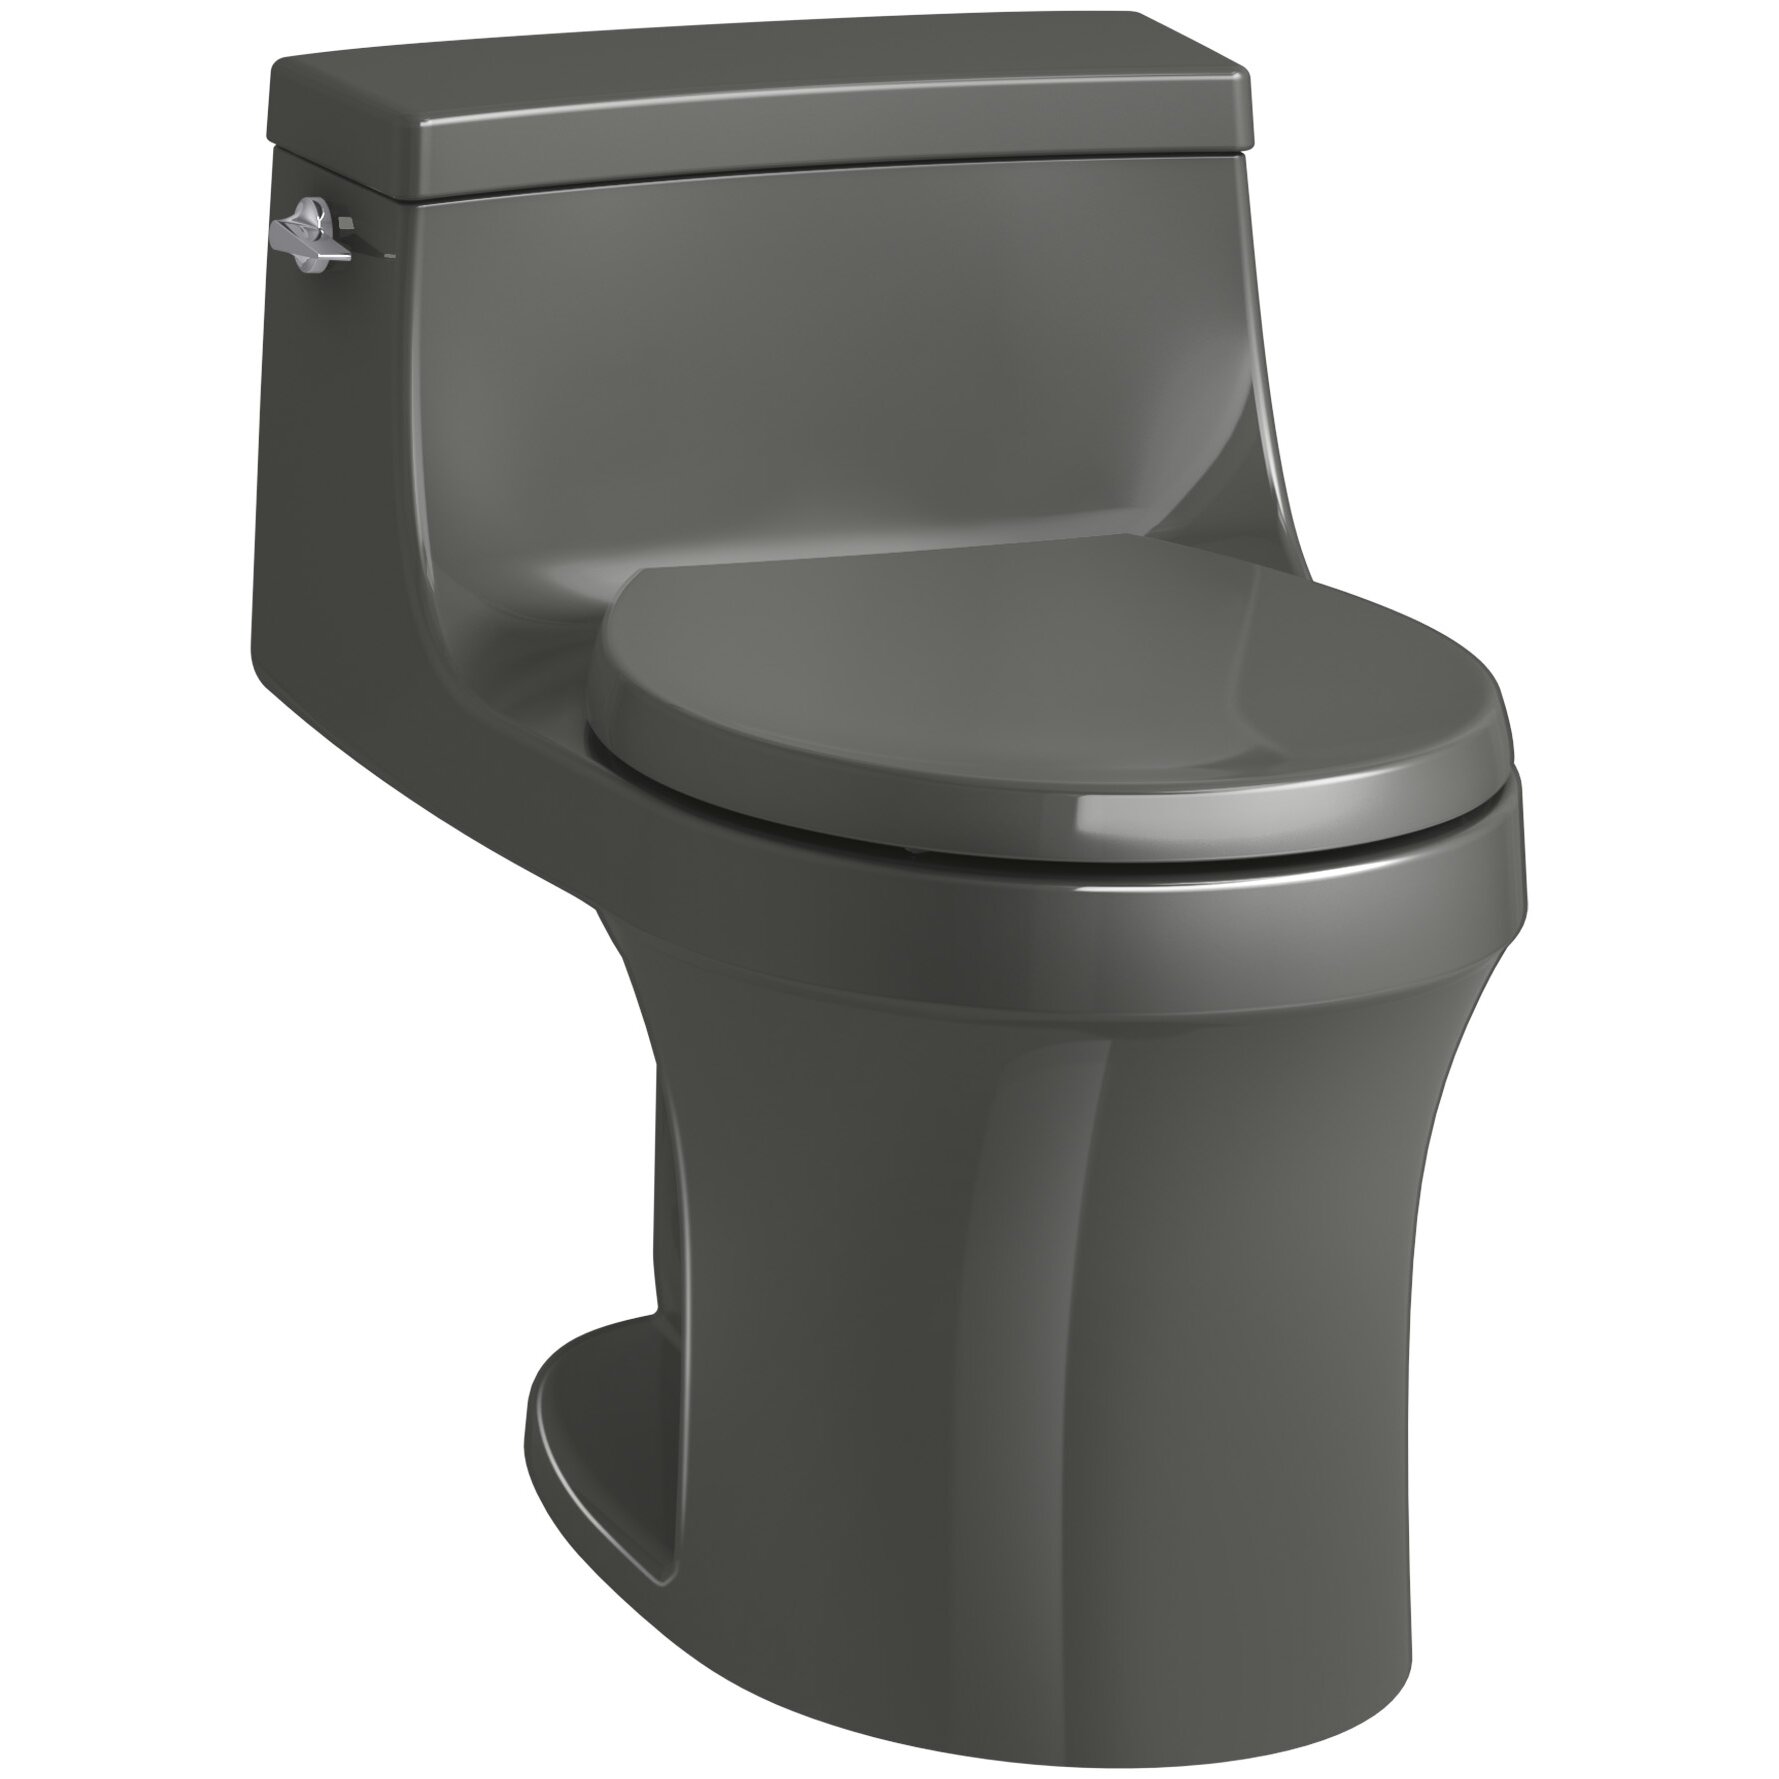 Kohler San Souci 1 Piece Round-Front 1.28 GPF Toilet with Aquapiston Flushing Technology 